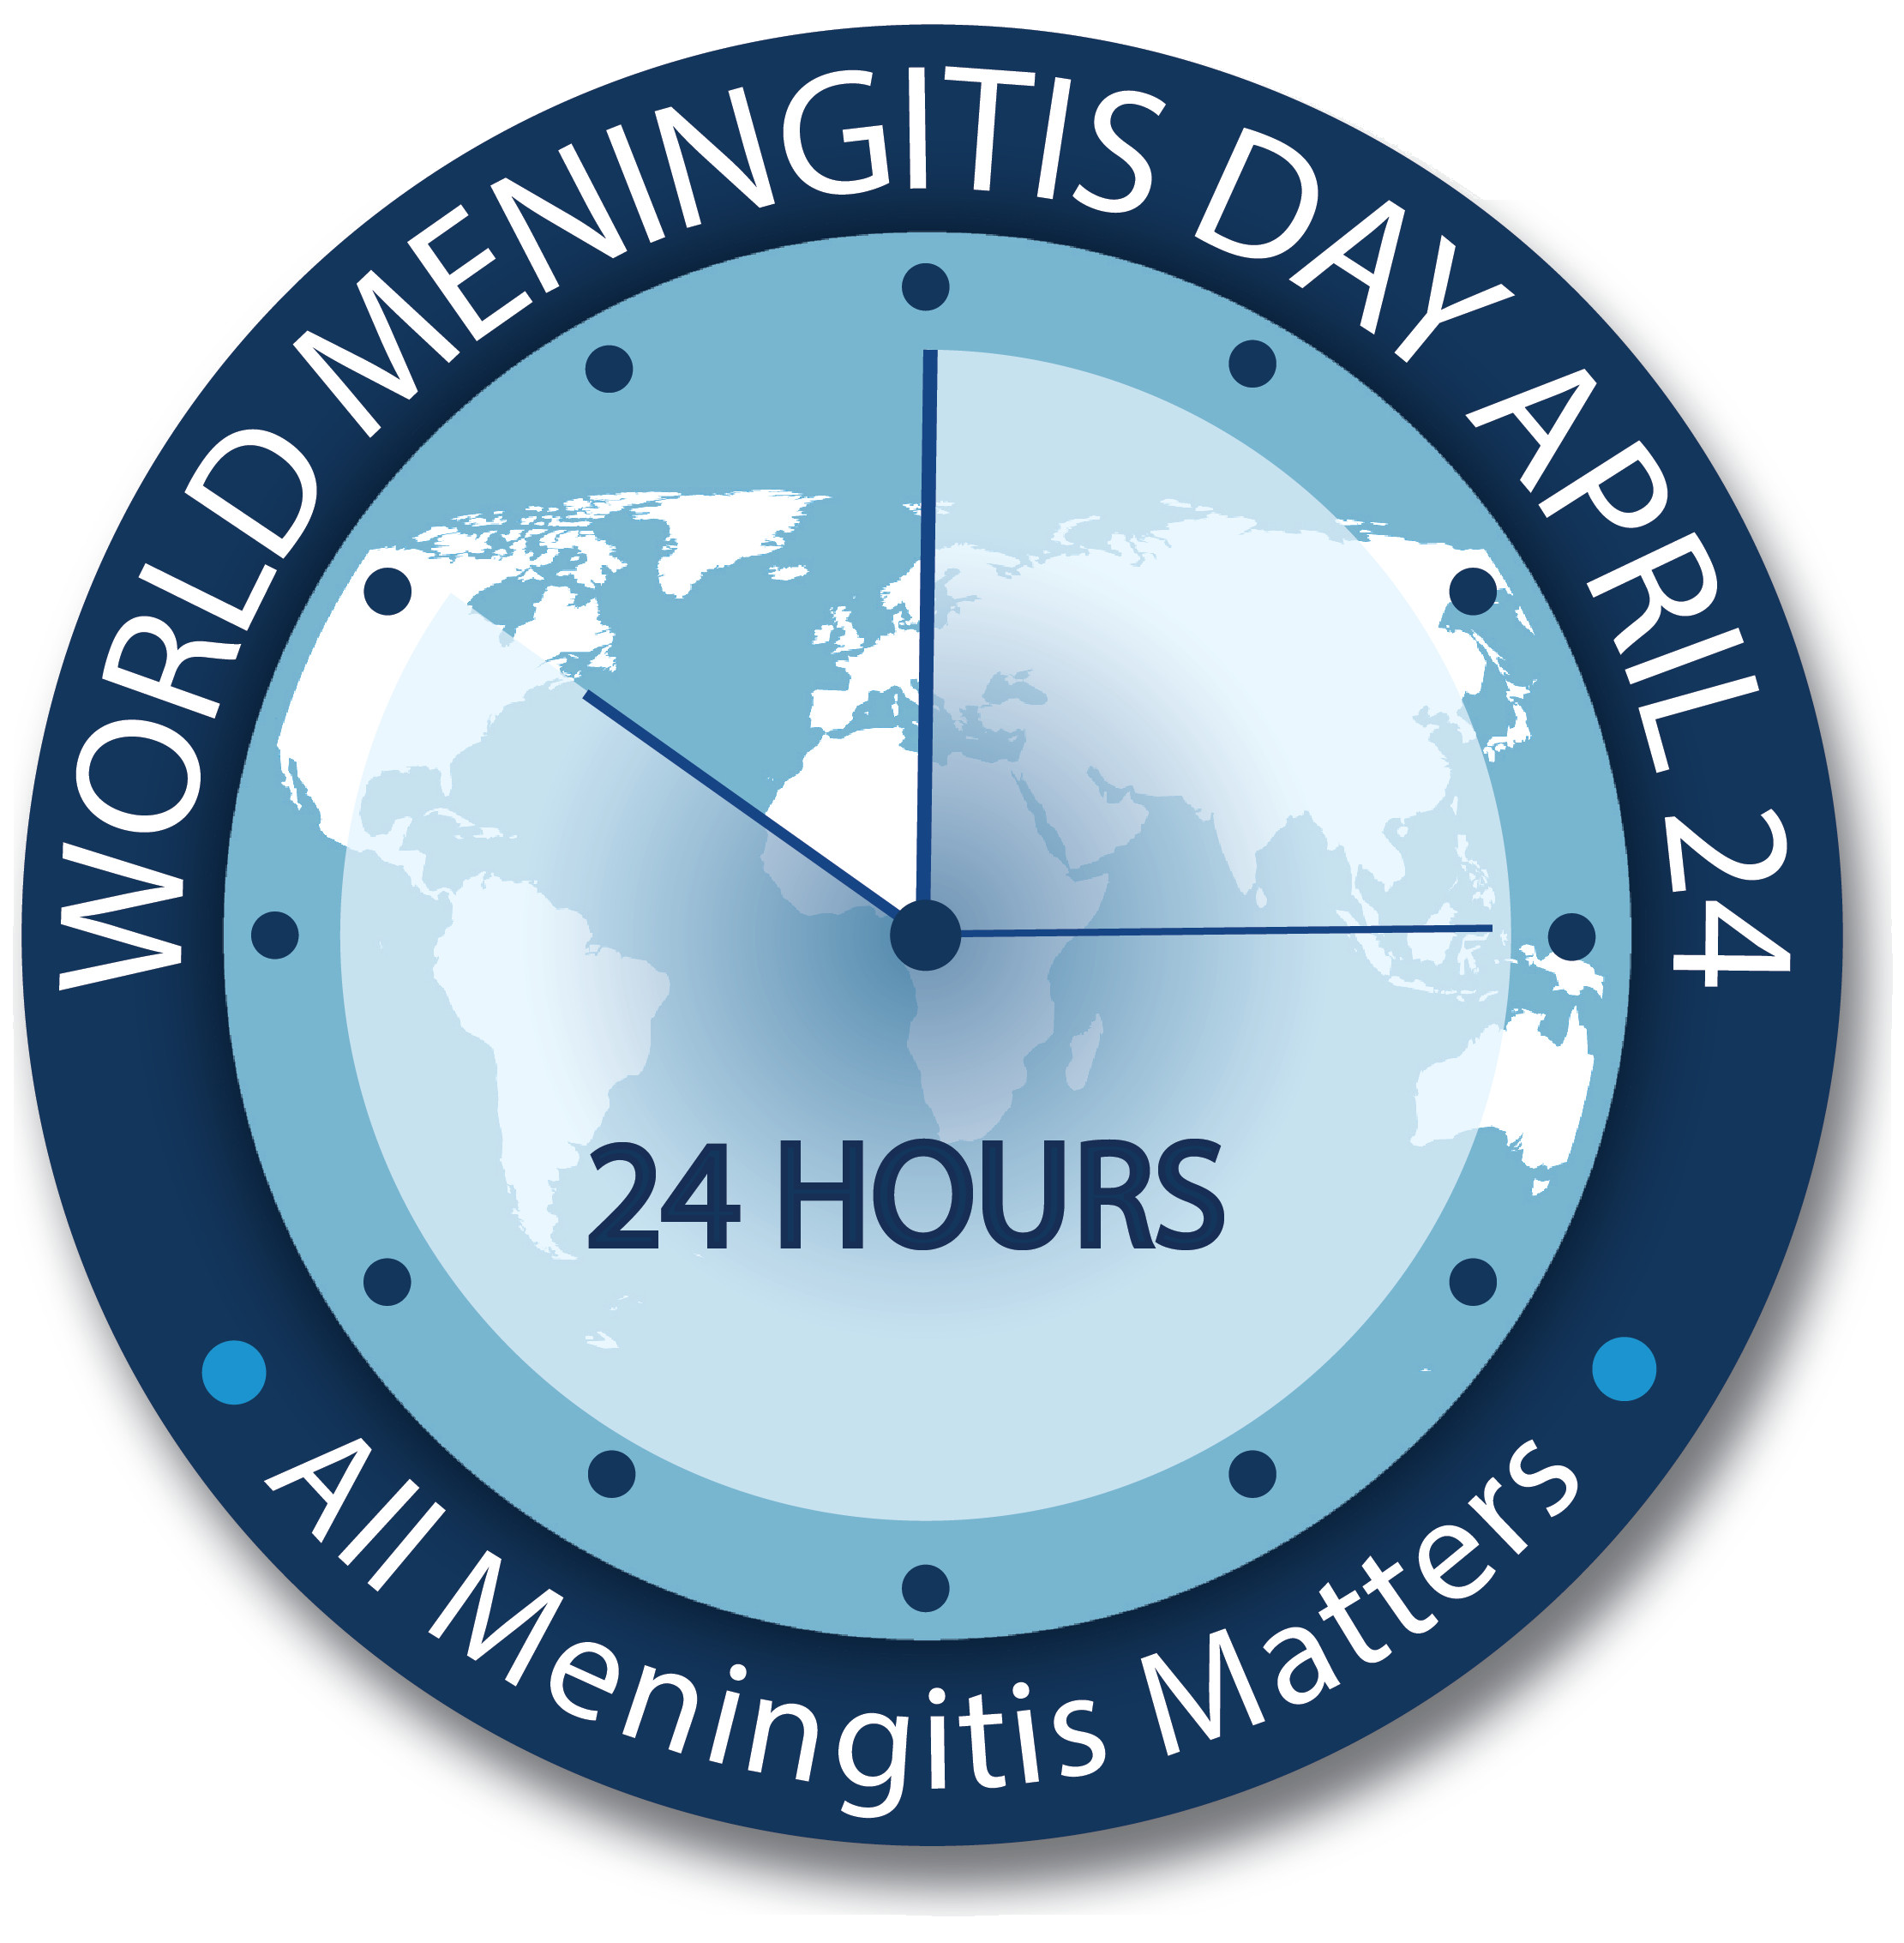 haemophilus influenzae meningitis precautions